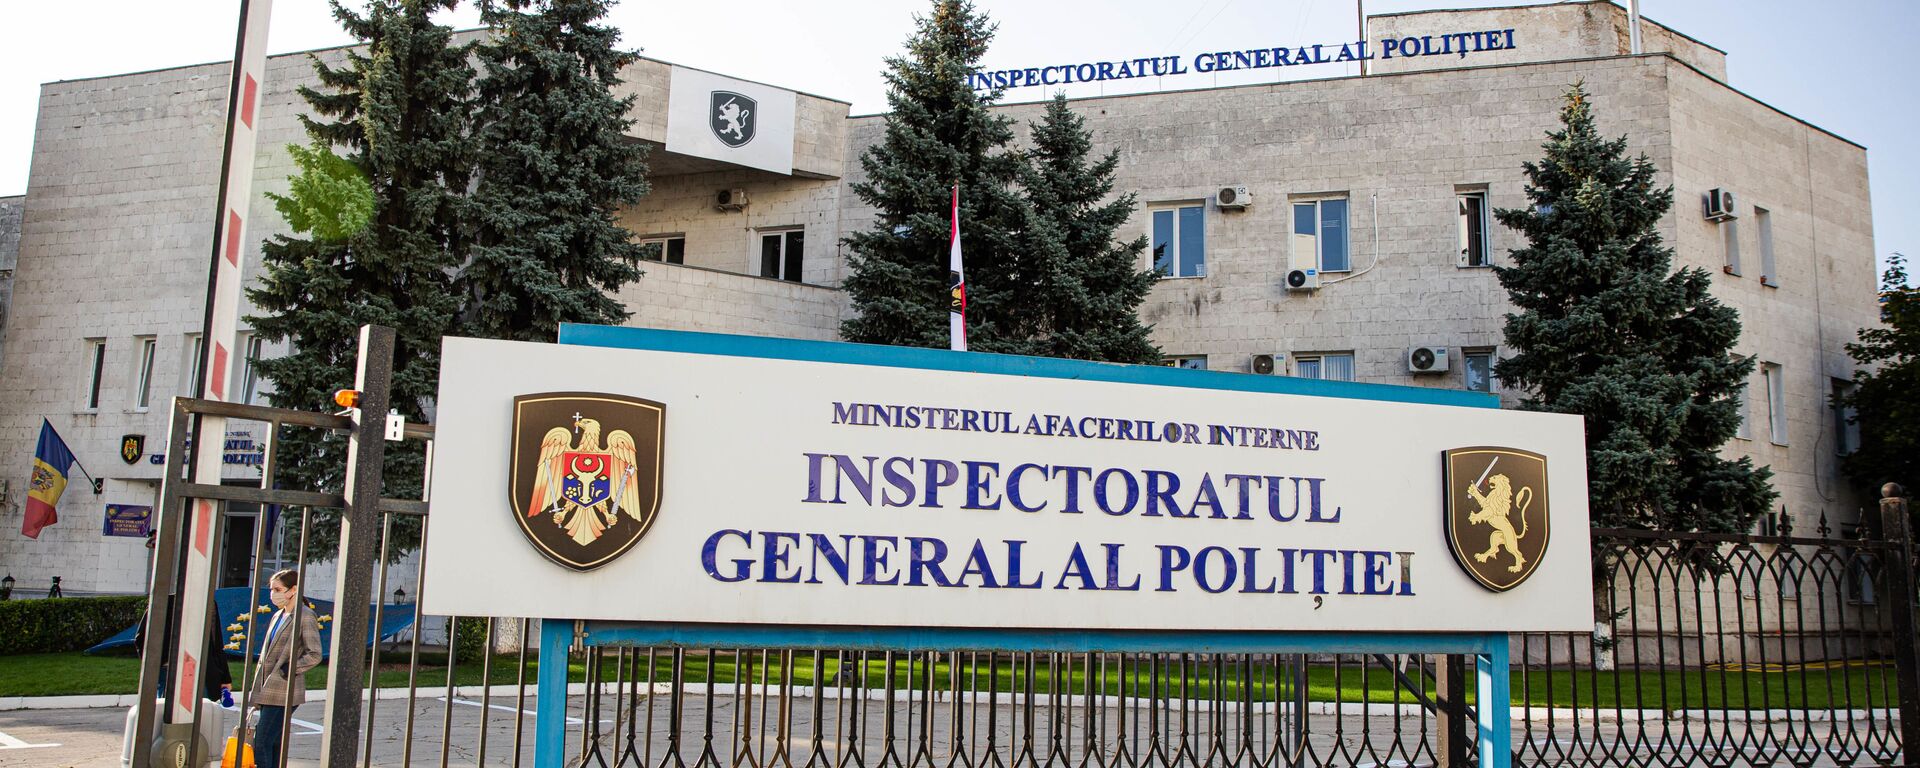 Inspectoratul General al Politiei poliției IGP - Sputnik Moldova, 1920, 17.08.2021